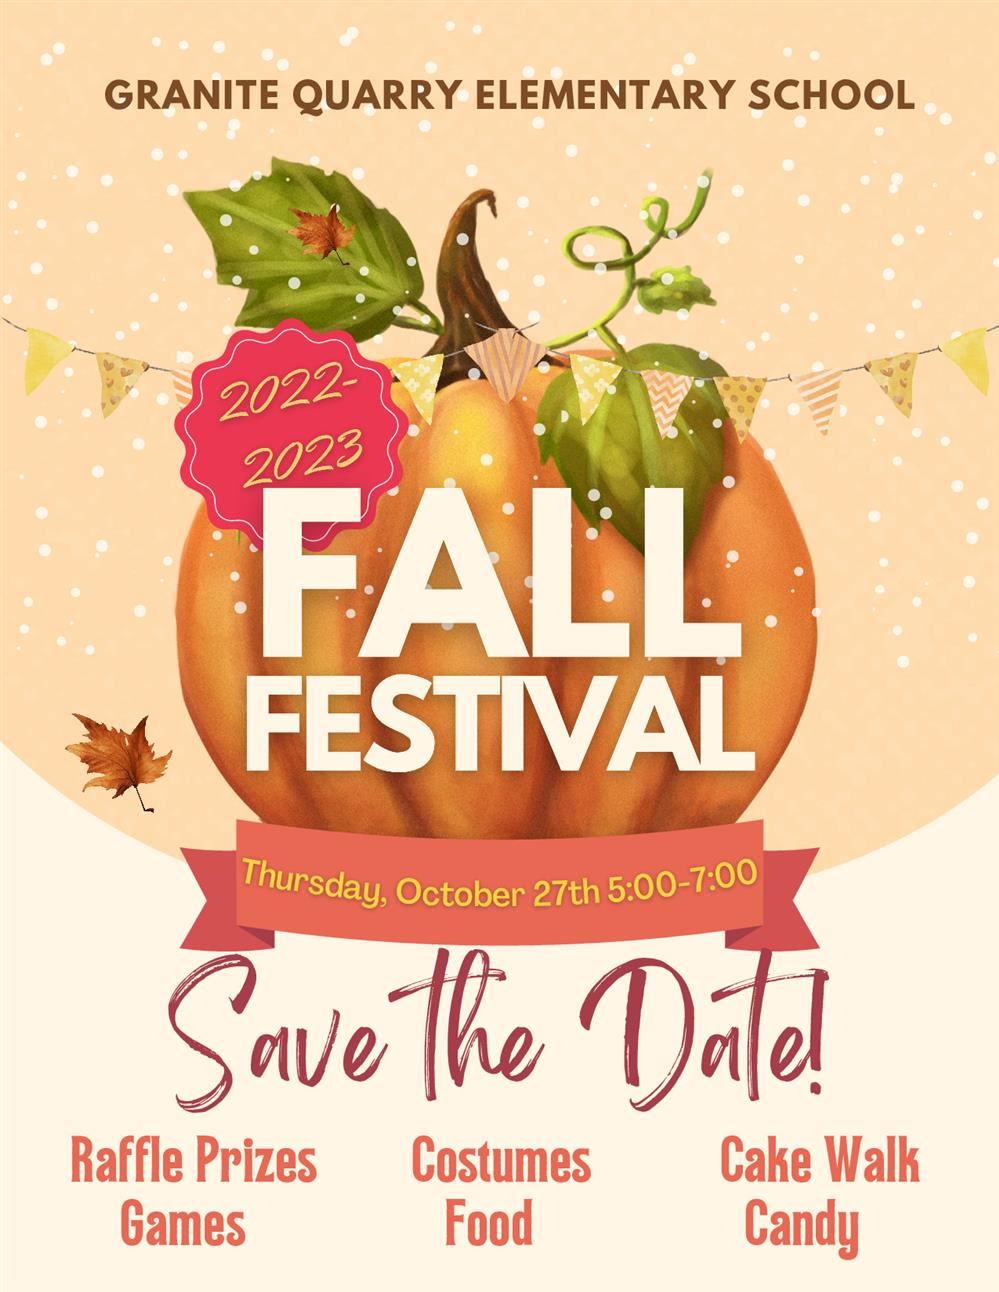  Fall Festival Schedule